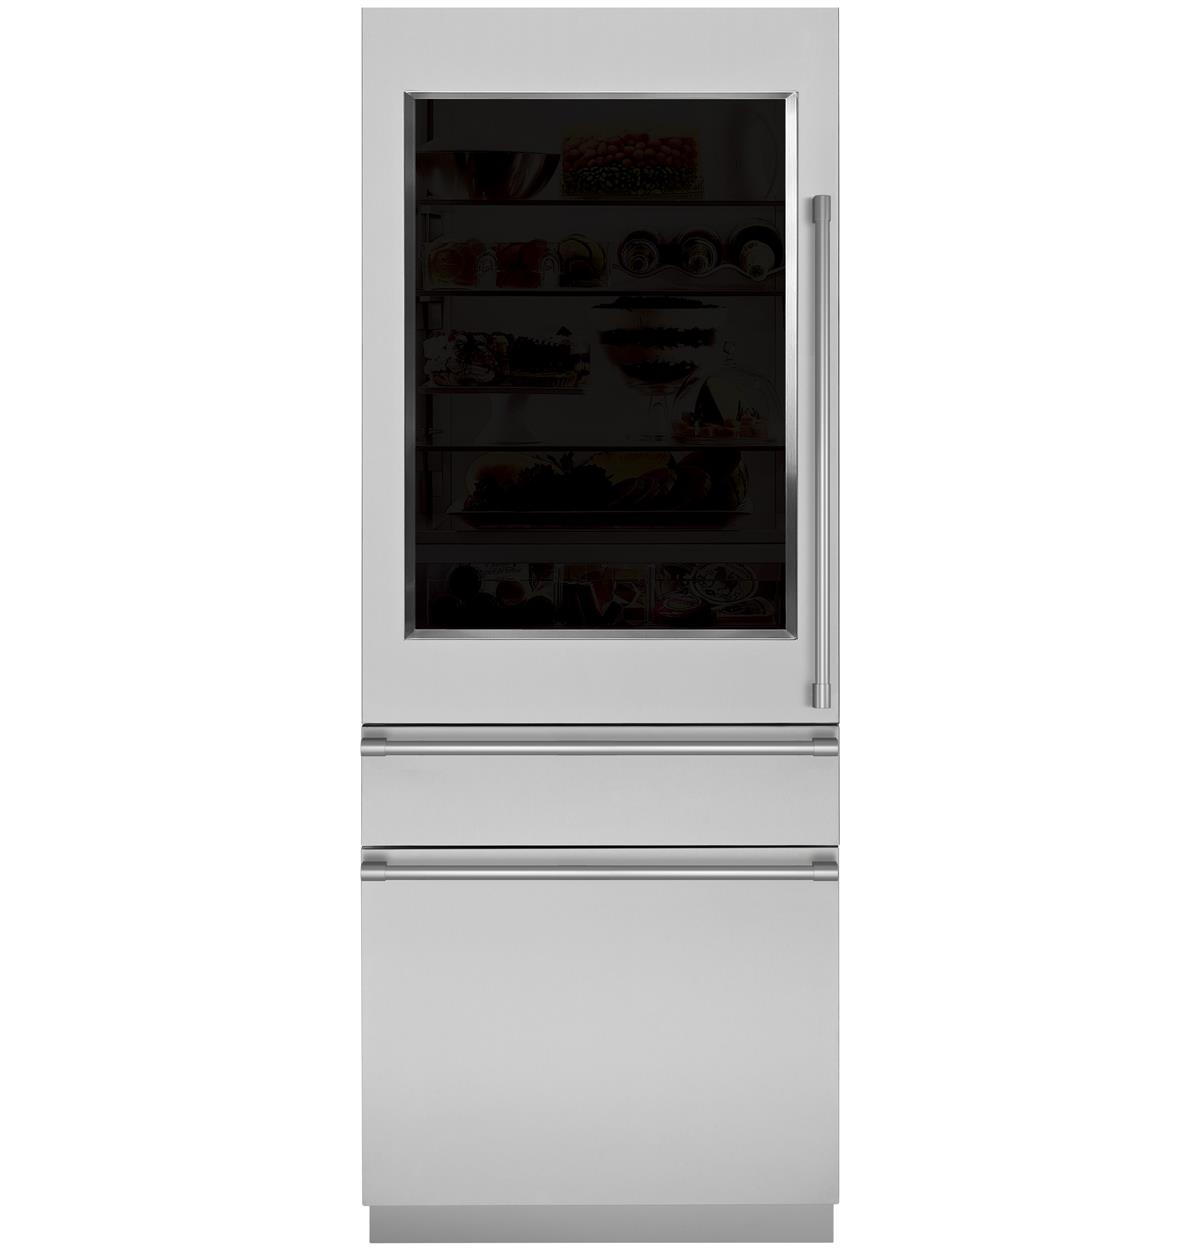 Monogram integrated glass door refrigerator